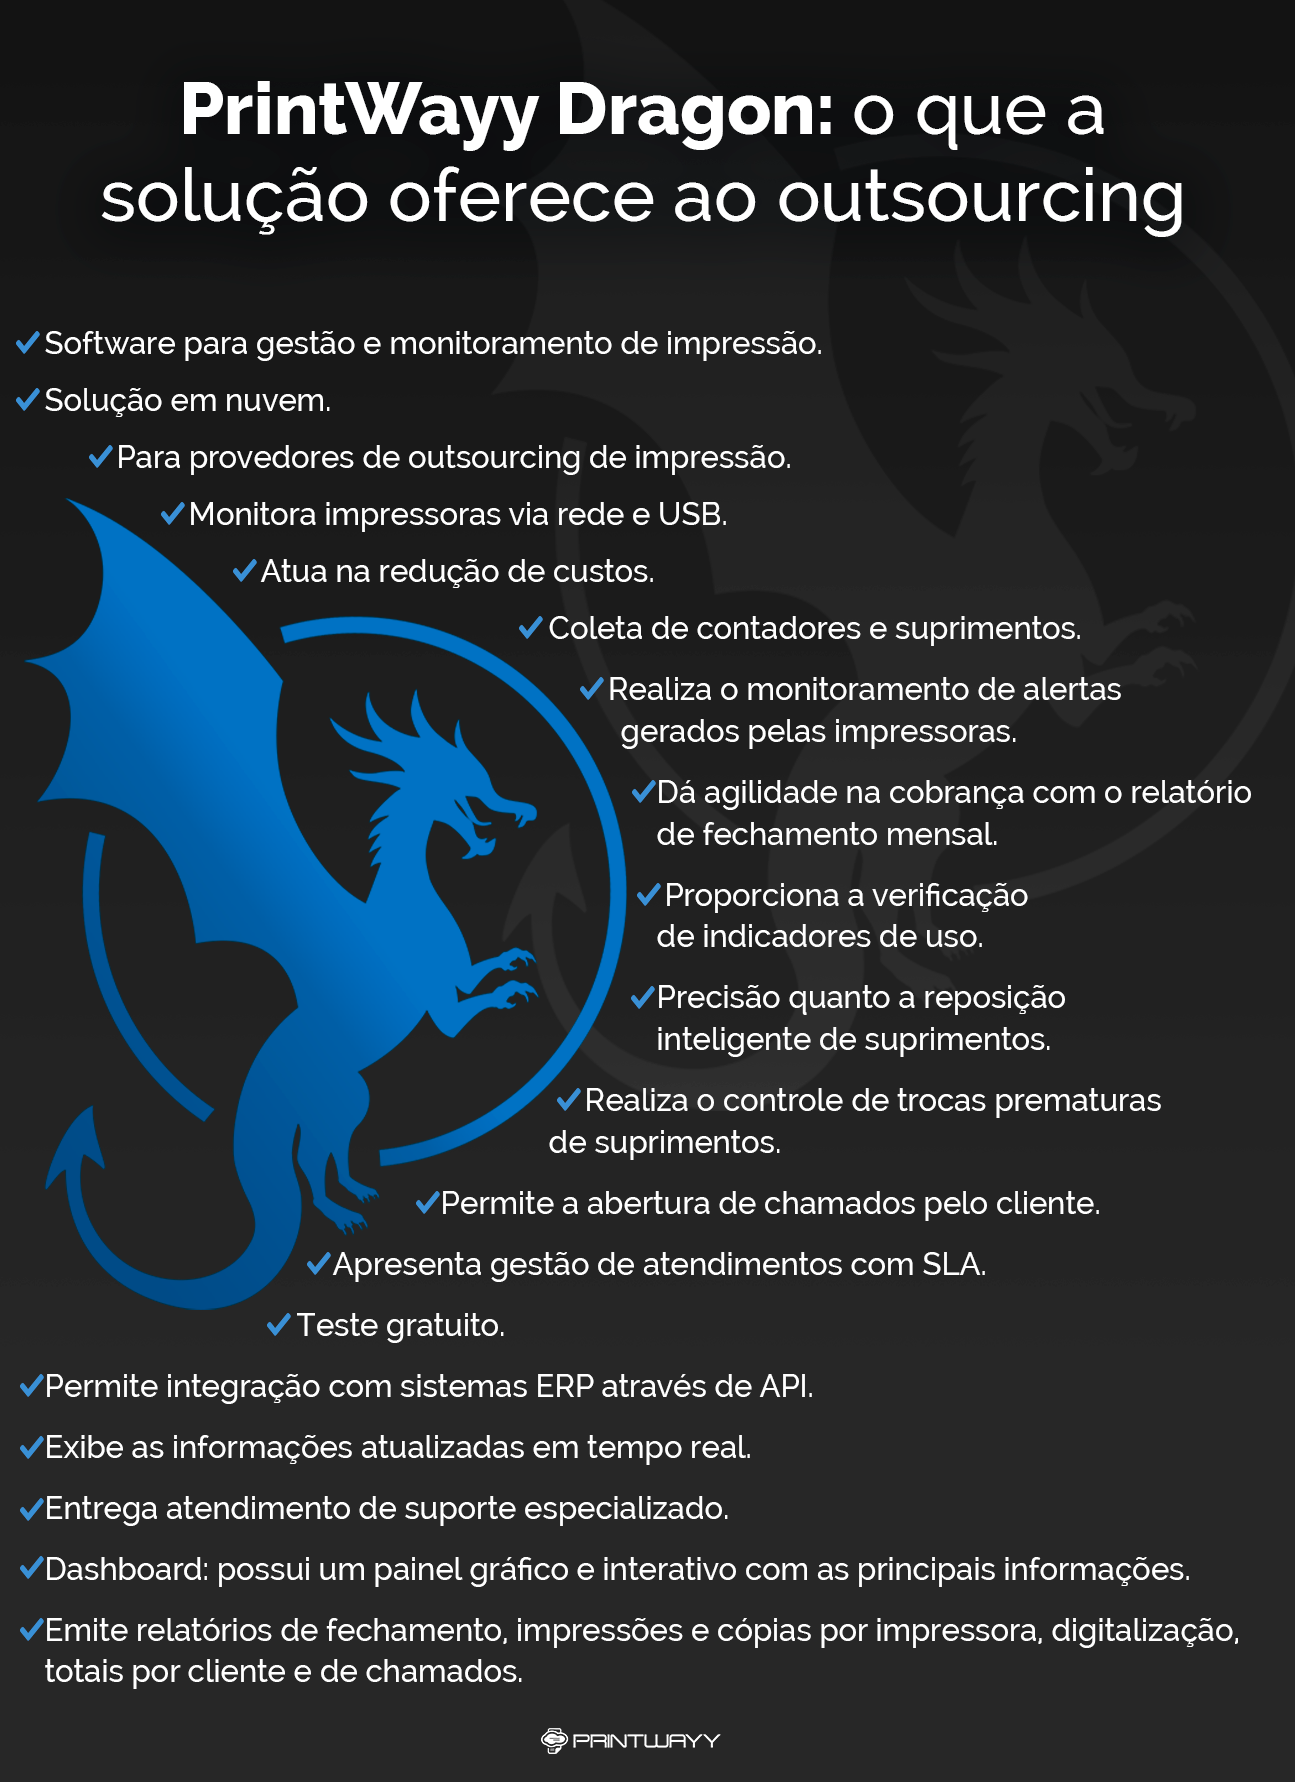 Infográfico com as características do PrintWayy Dragon.